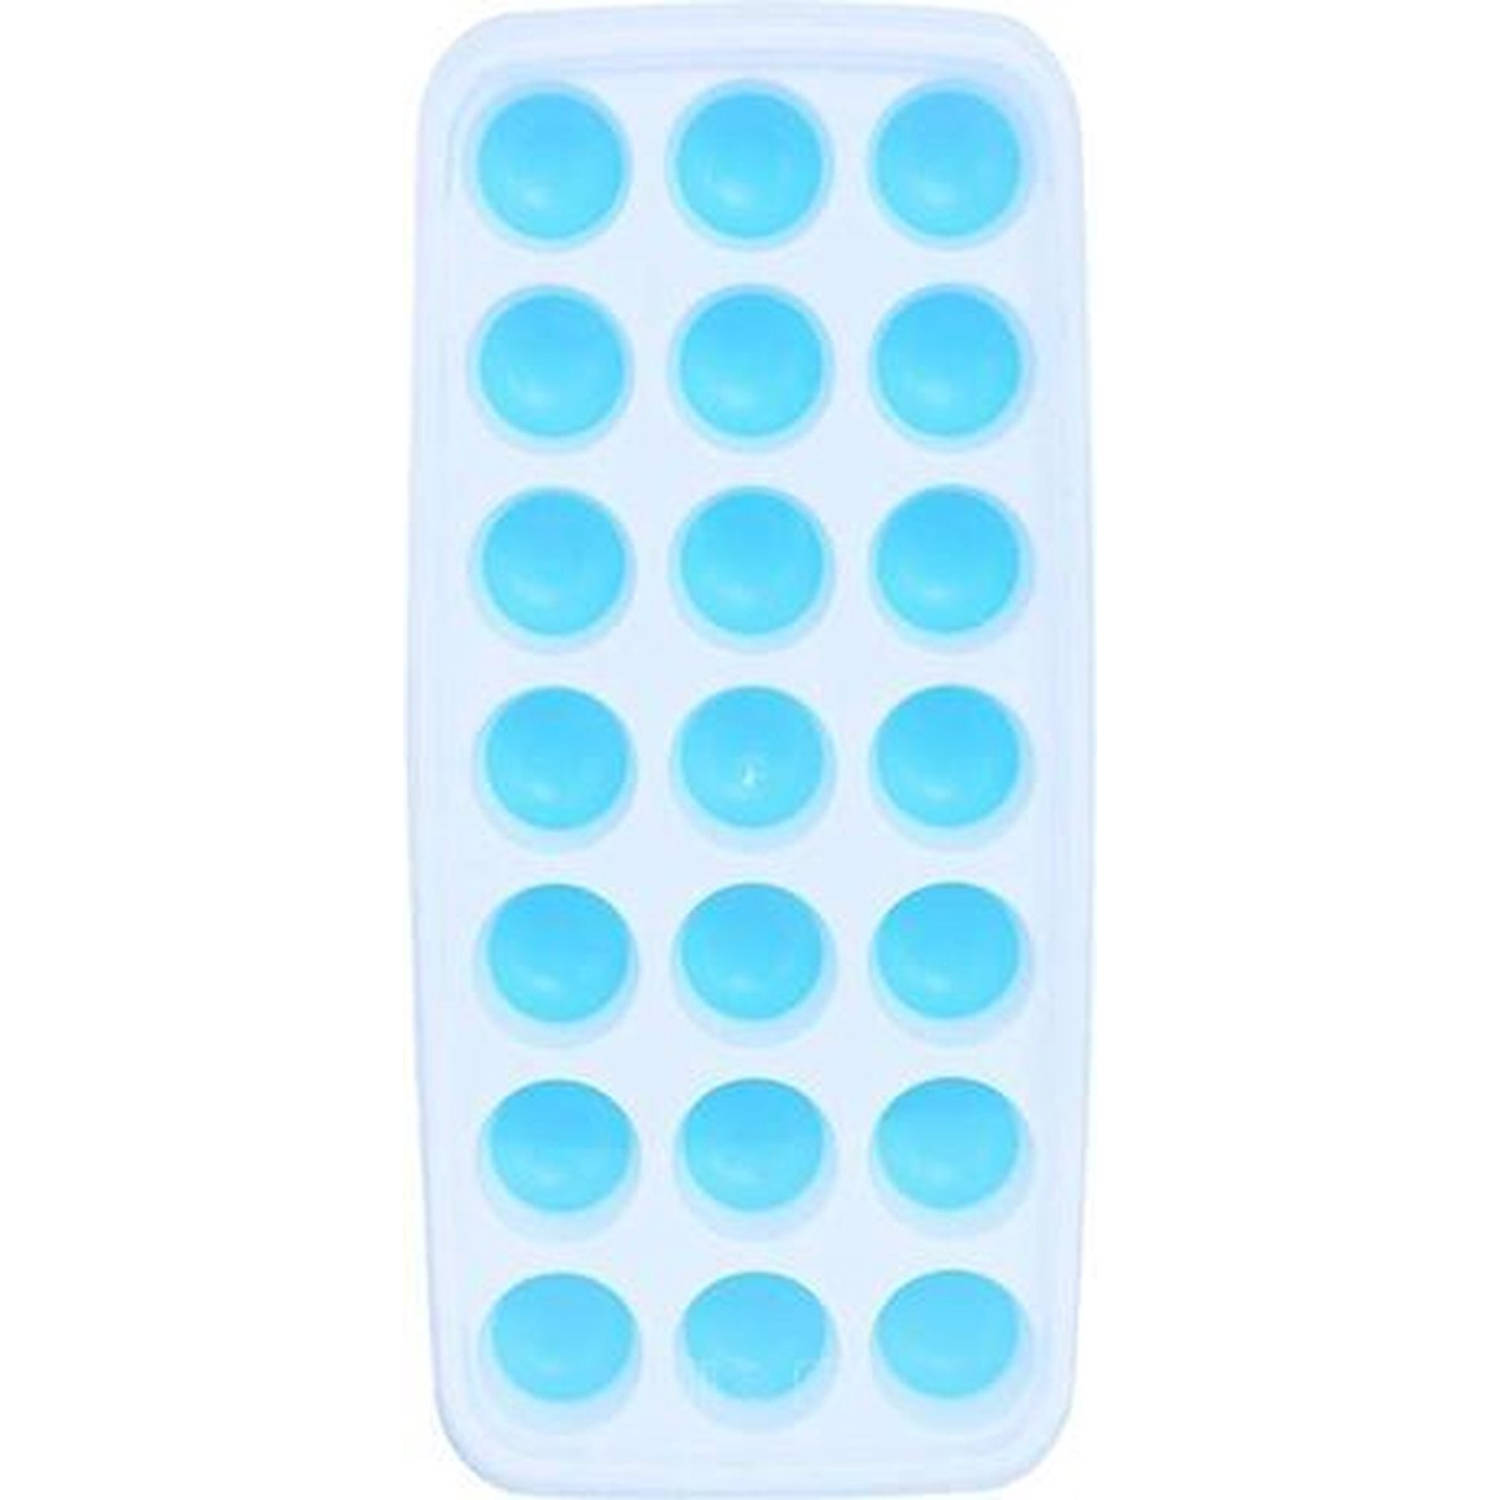 Coninx Ijsblokjesvorm - IJsblokjesmakers - Ijsklonten - Siliconen BPA vrij - Wit/Blauw